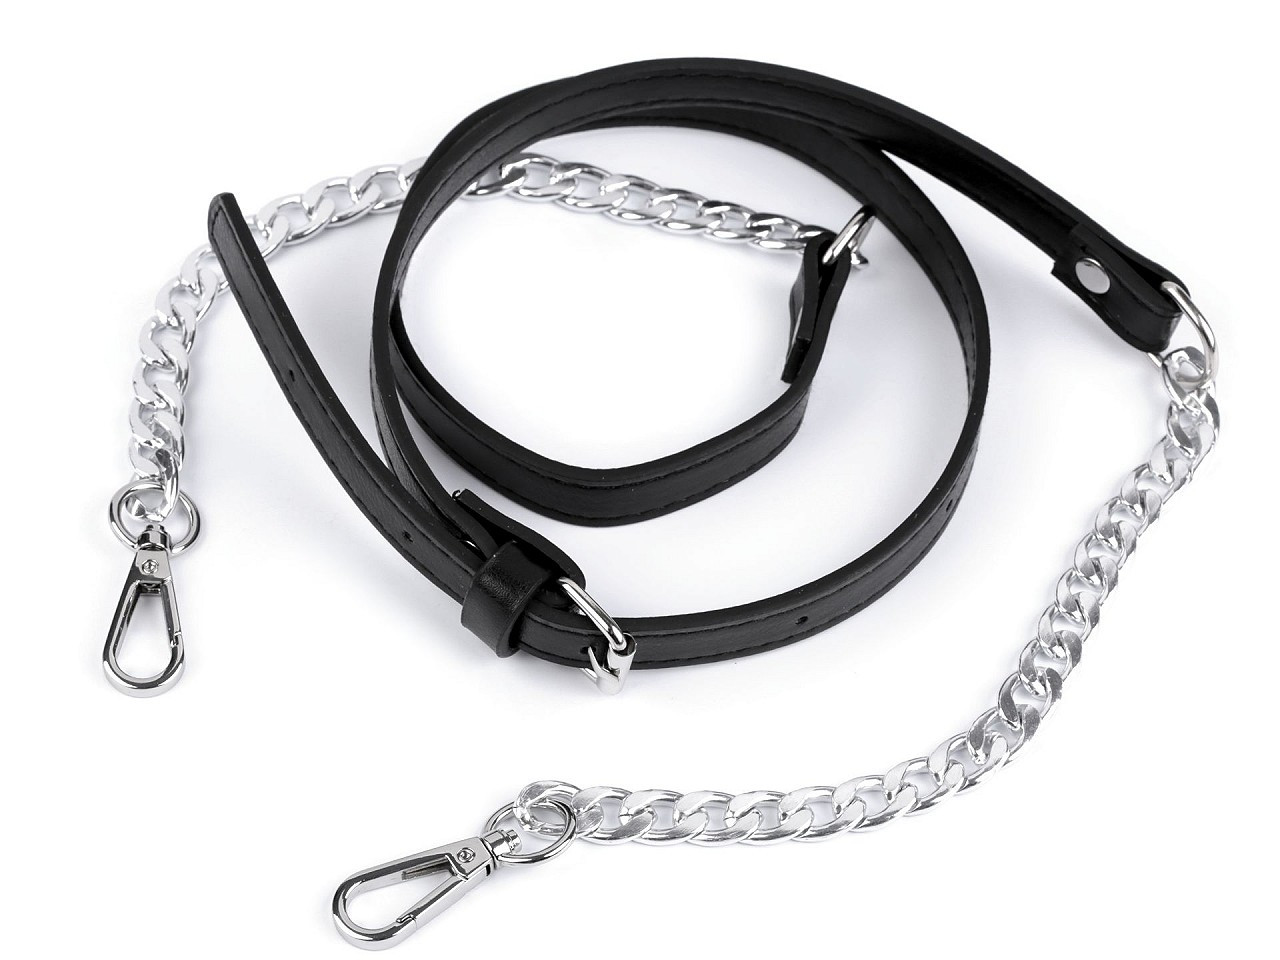 Koženkový popruh / ucho na kabelku s řetízkem a karabinami šíře 1,5 cm, barva 1 černá nikl